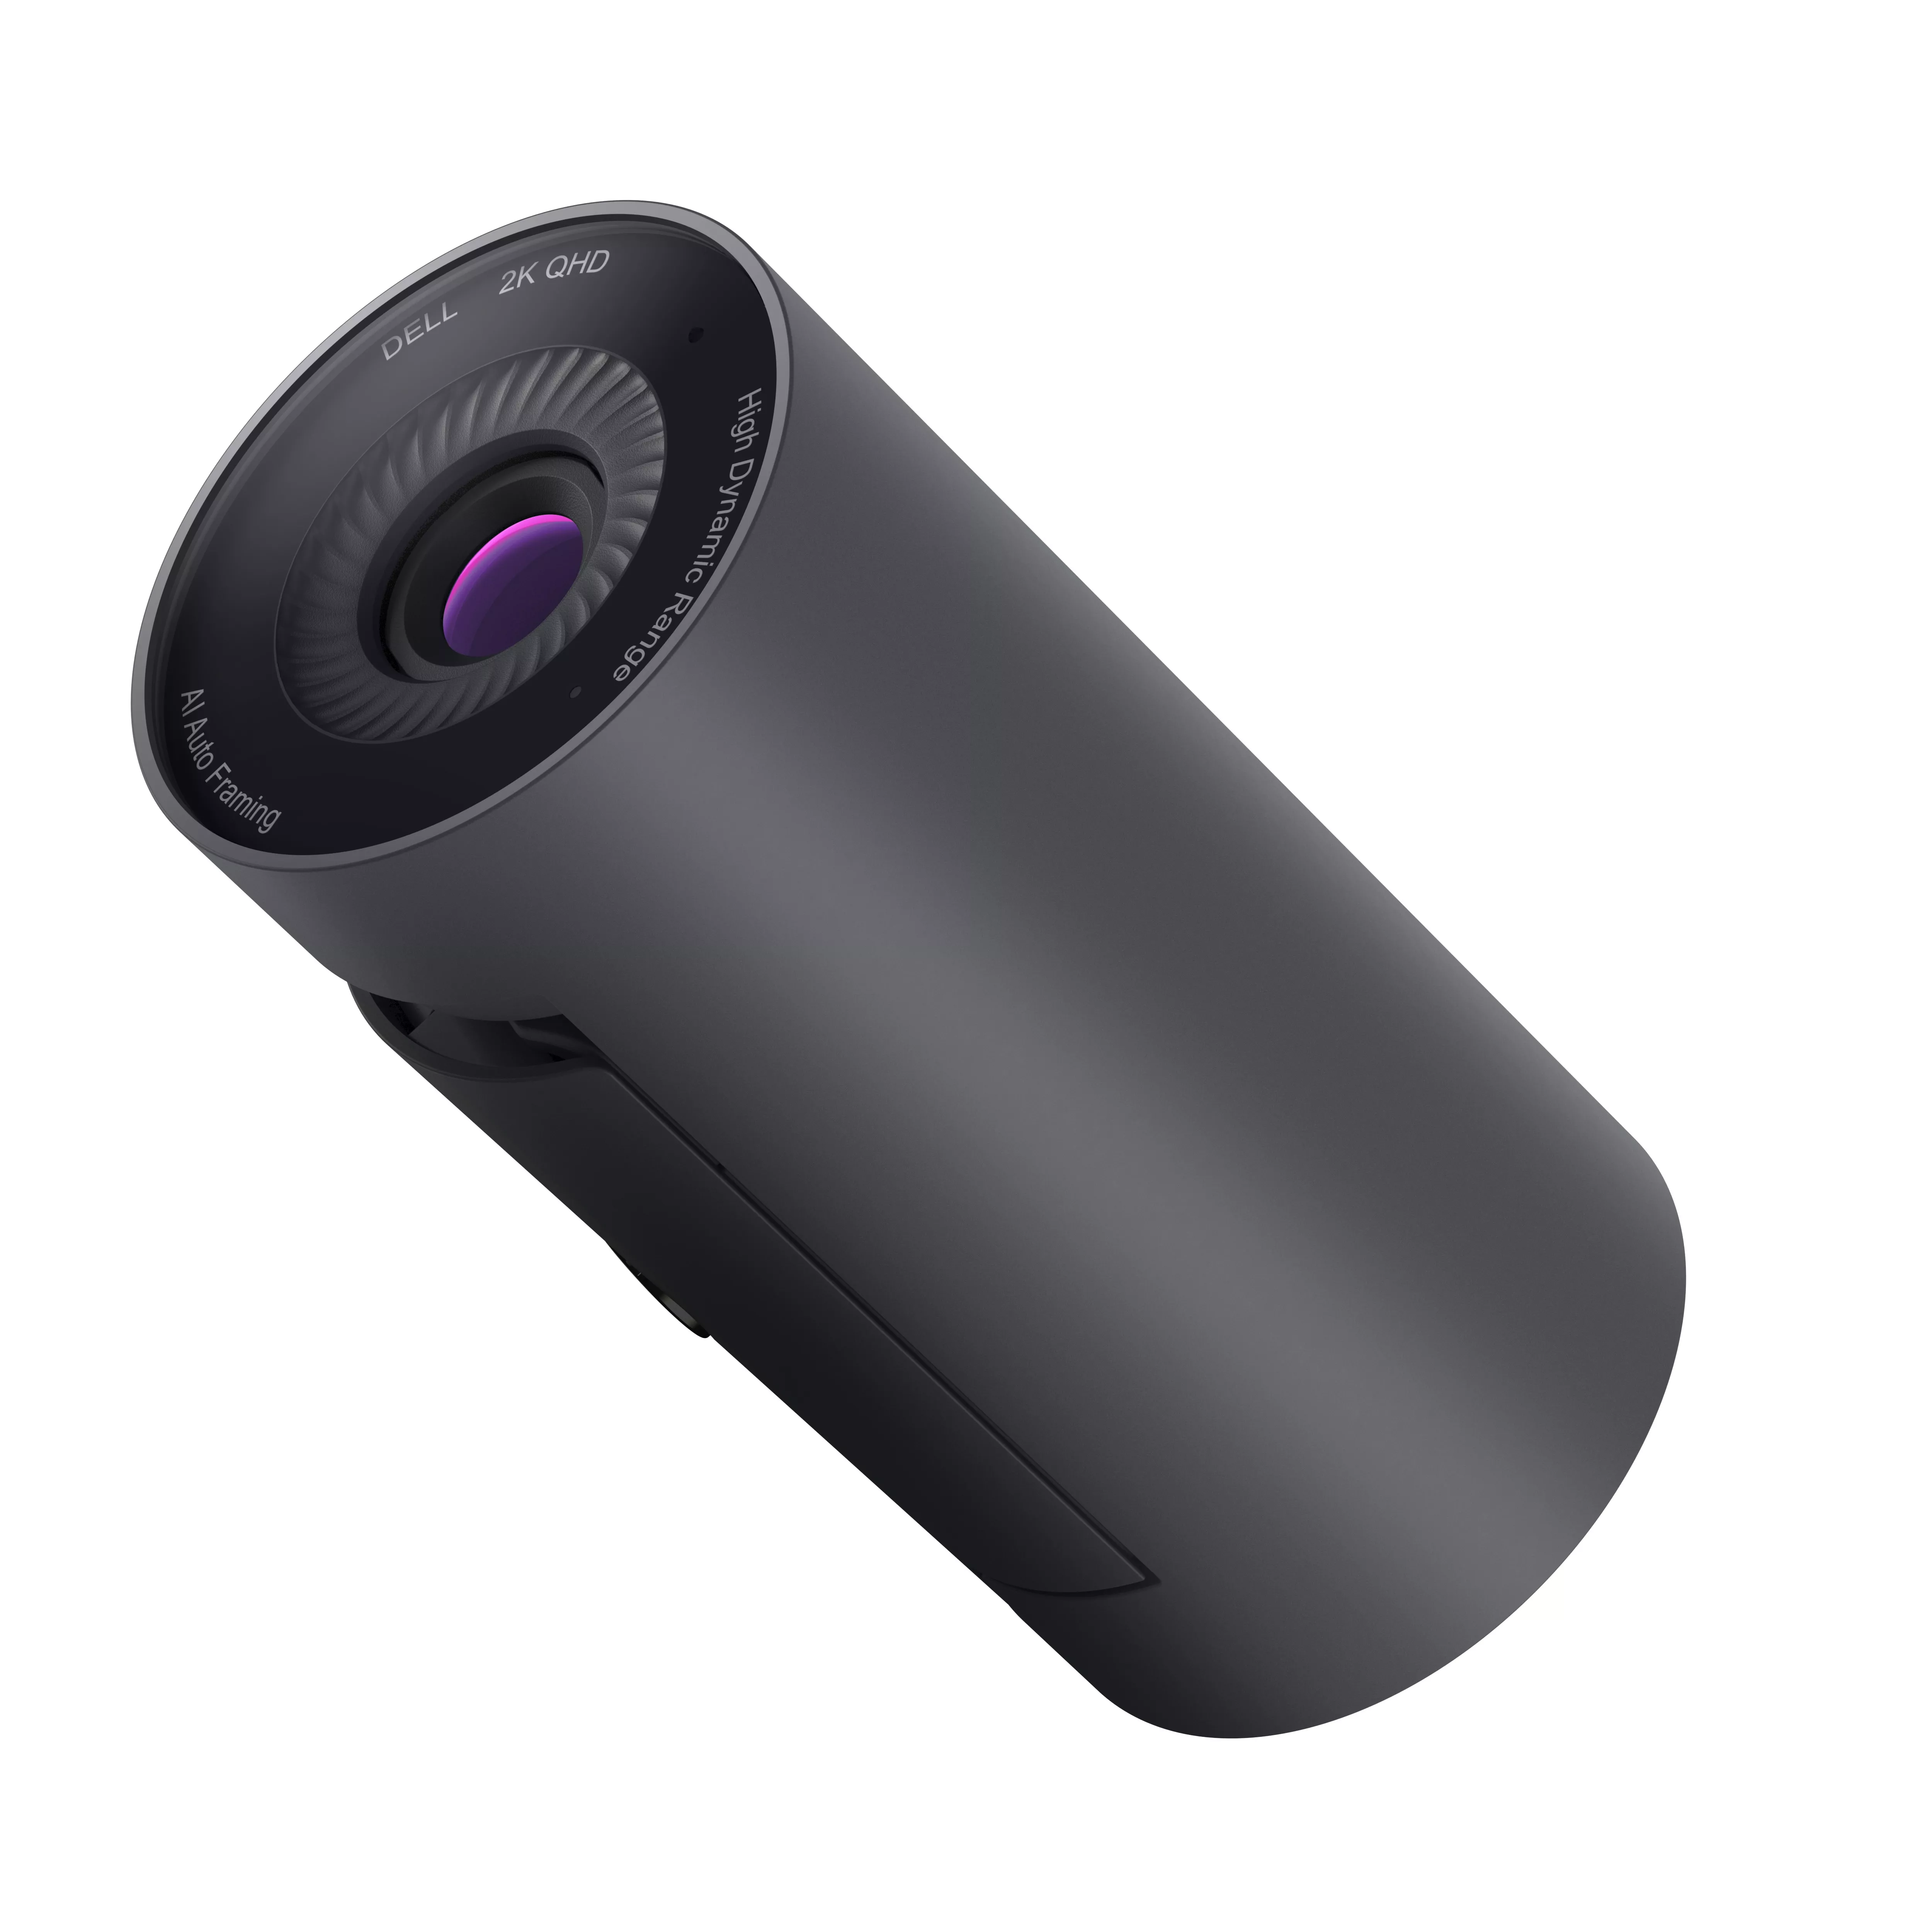 Achat DELL Webcam Dell Pro 2K - WB5023 sur hello RSE - visuel 9